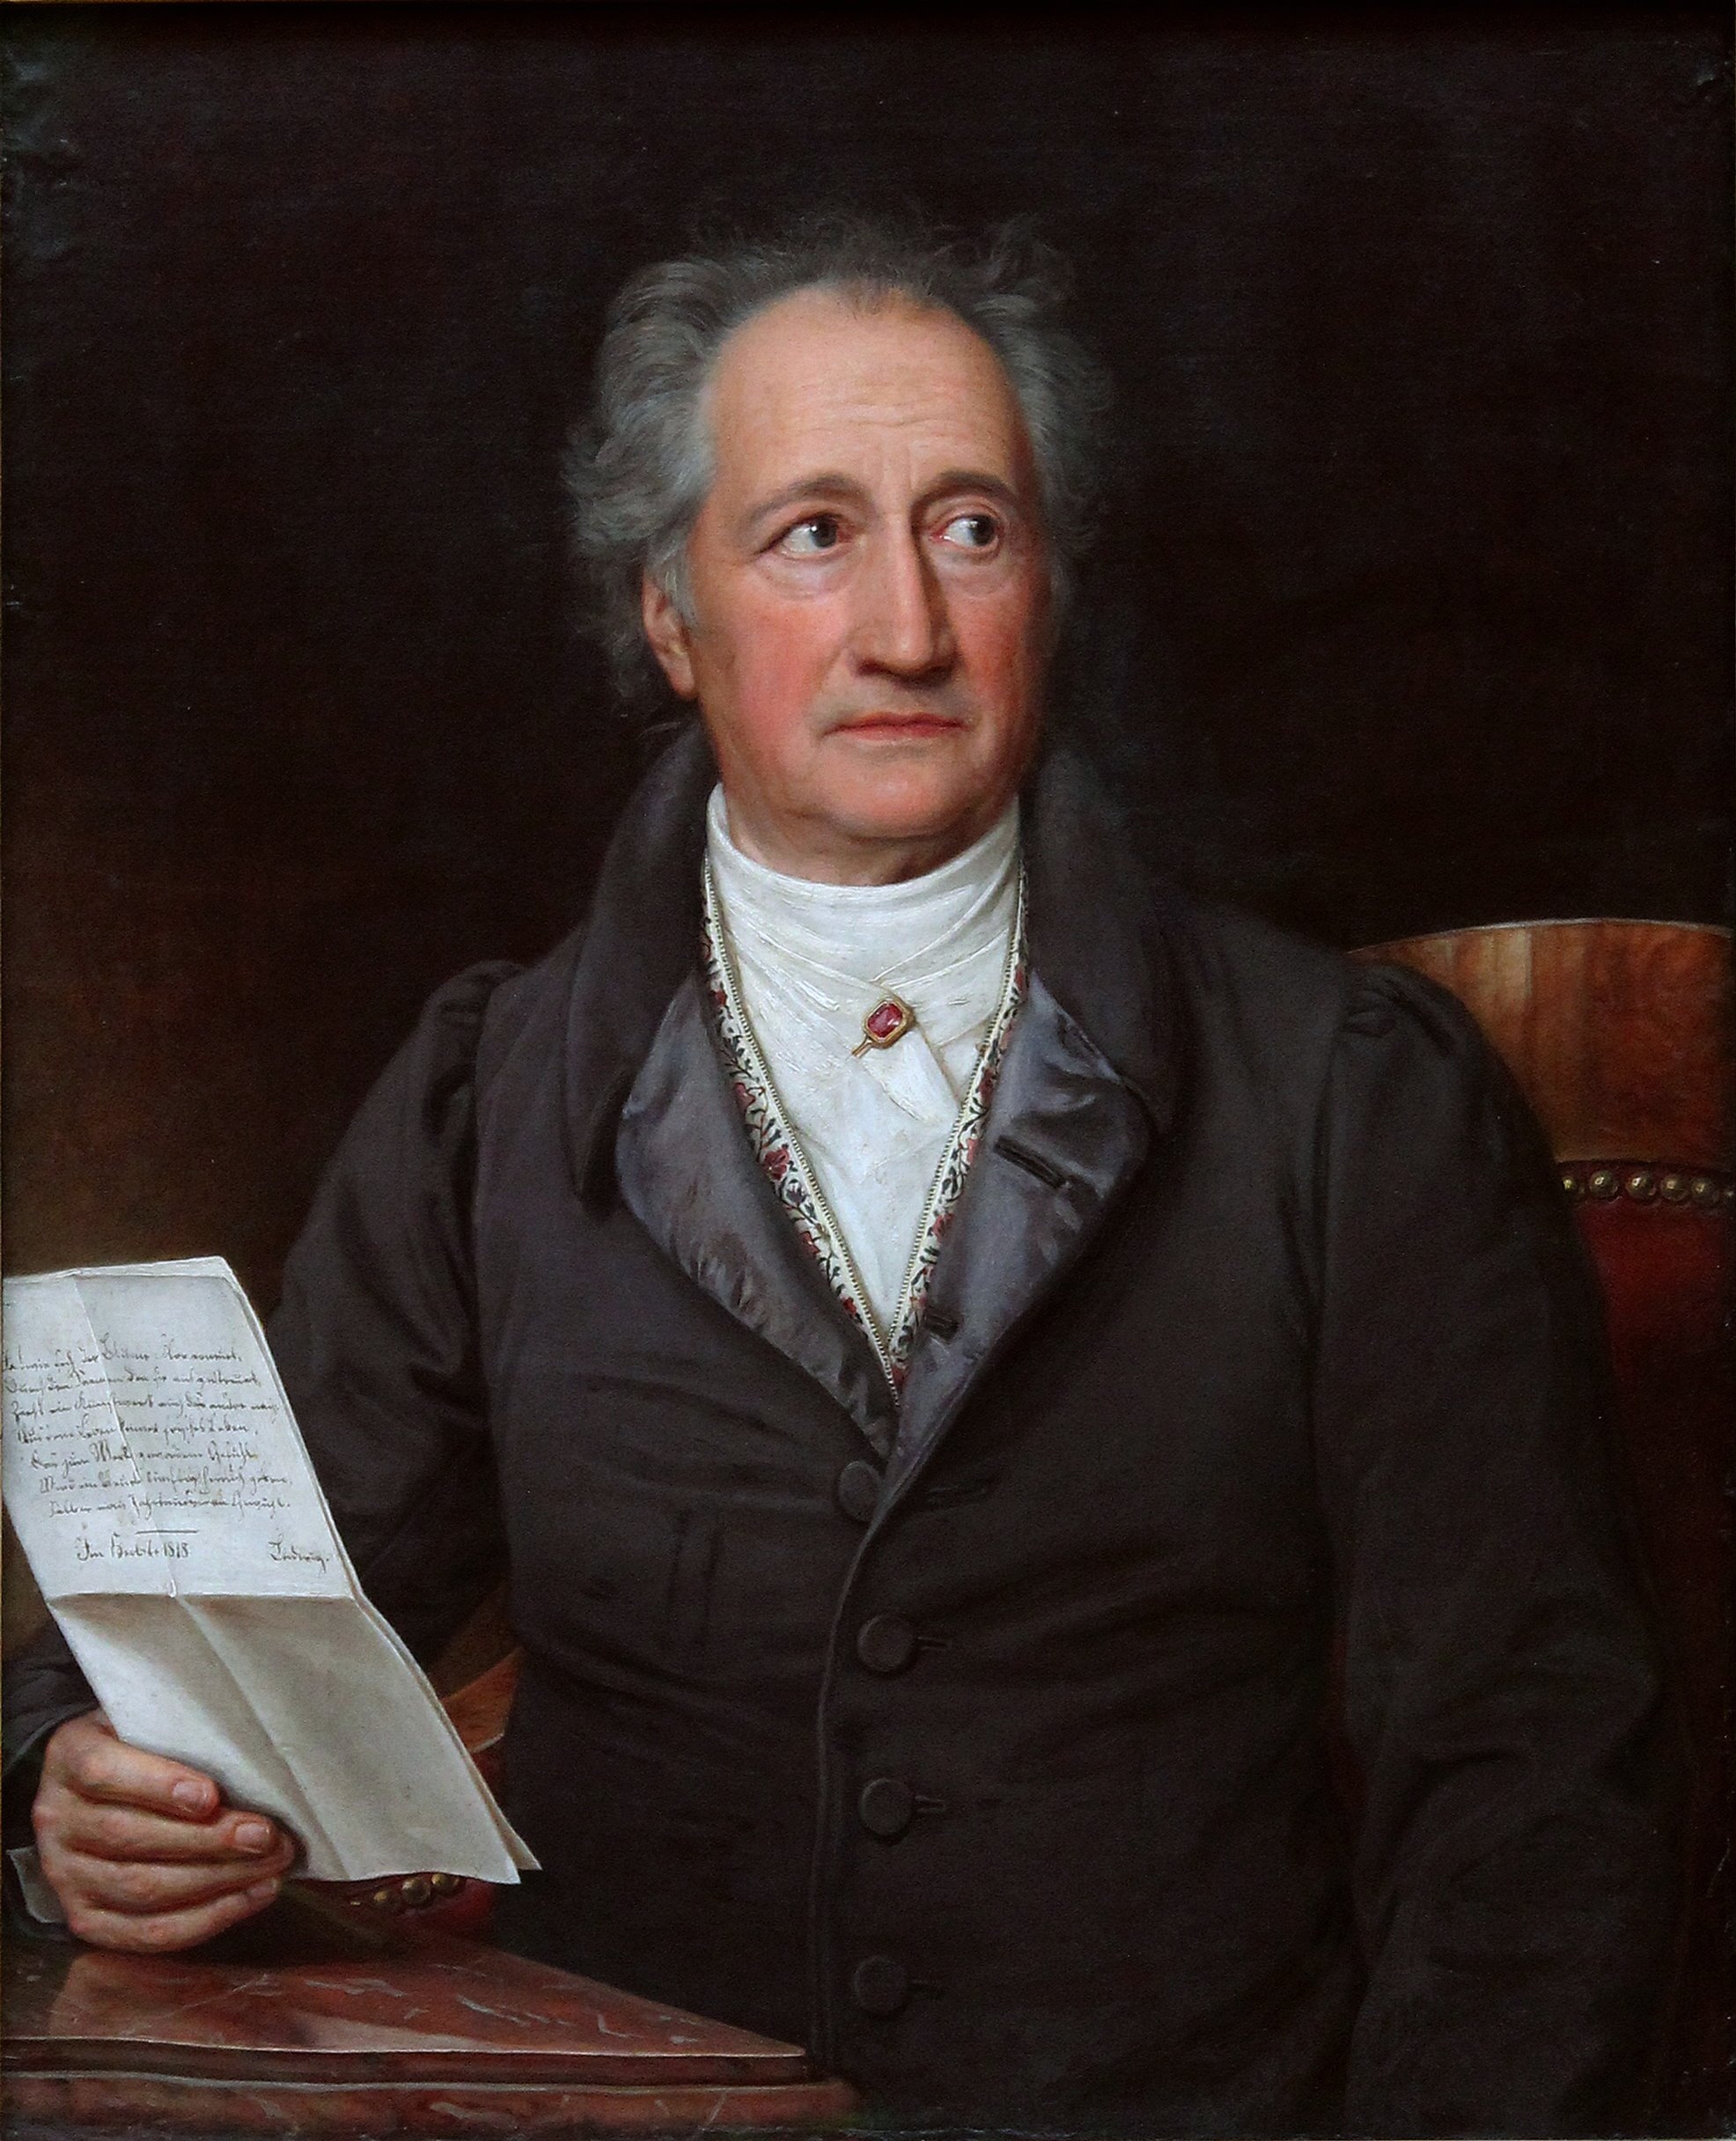 auteur Johann Wolfgang von Goethe de la citation Une feuille destinée à devenir grande est pleine de sillons et de rides au départ. Si l'on n'a pas de patience et que l'on veut qu'elle soit lisse comme une feuille de saule, on s'expose à des problèmes.